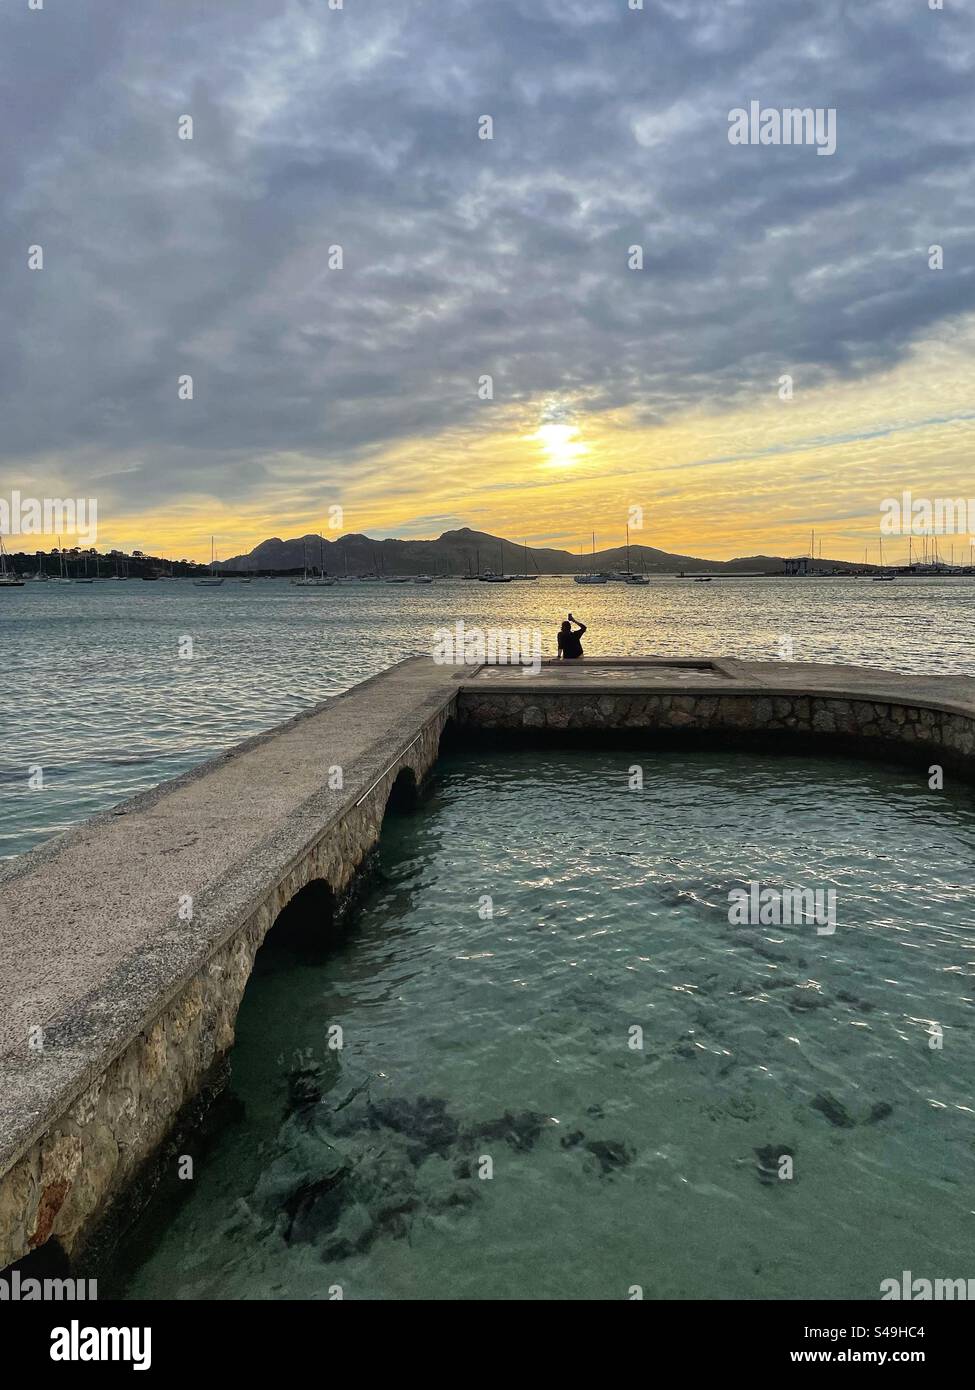 Femme assise sur un quai et prenant des photos du soleil levant à Port de Polença, Majorque, Espagne Banque D'Images